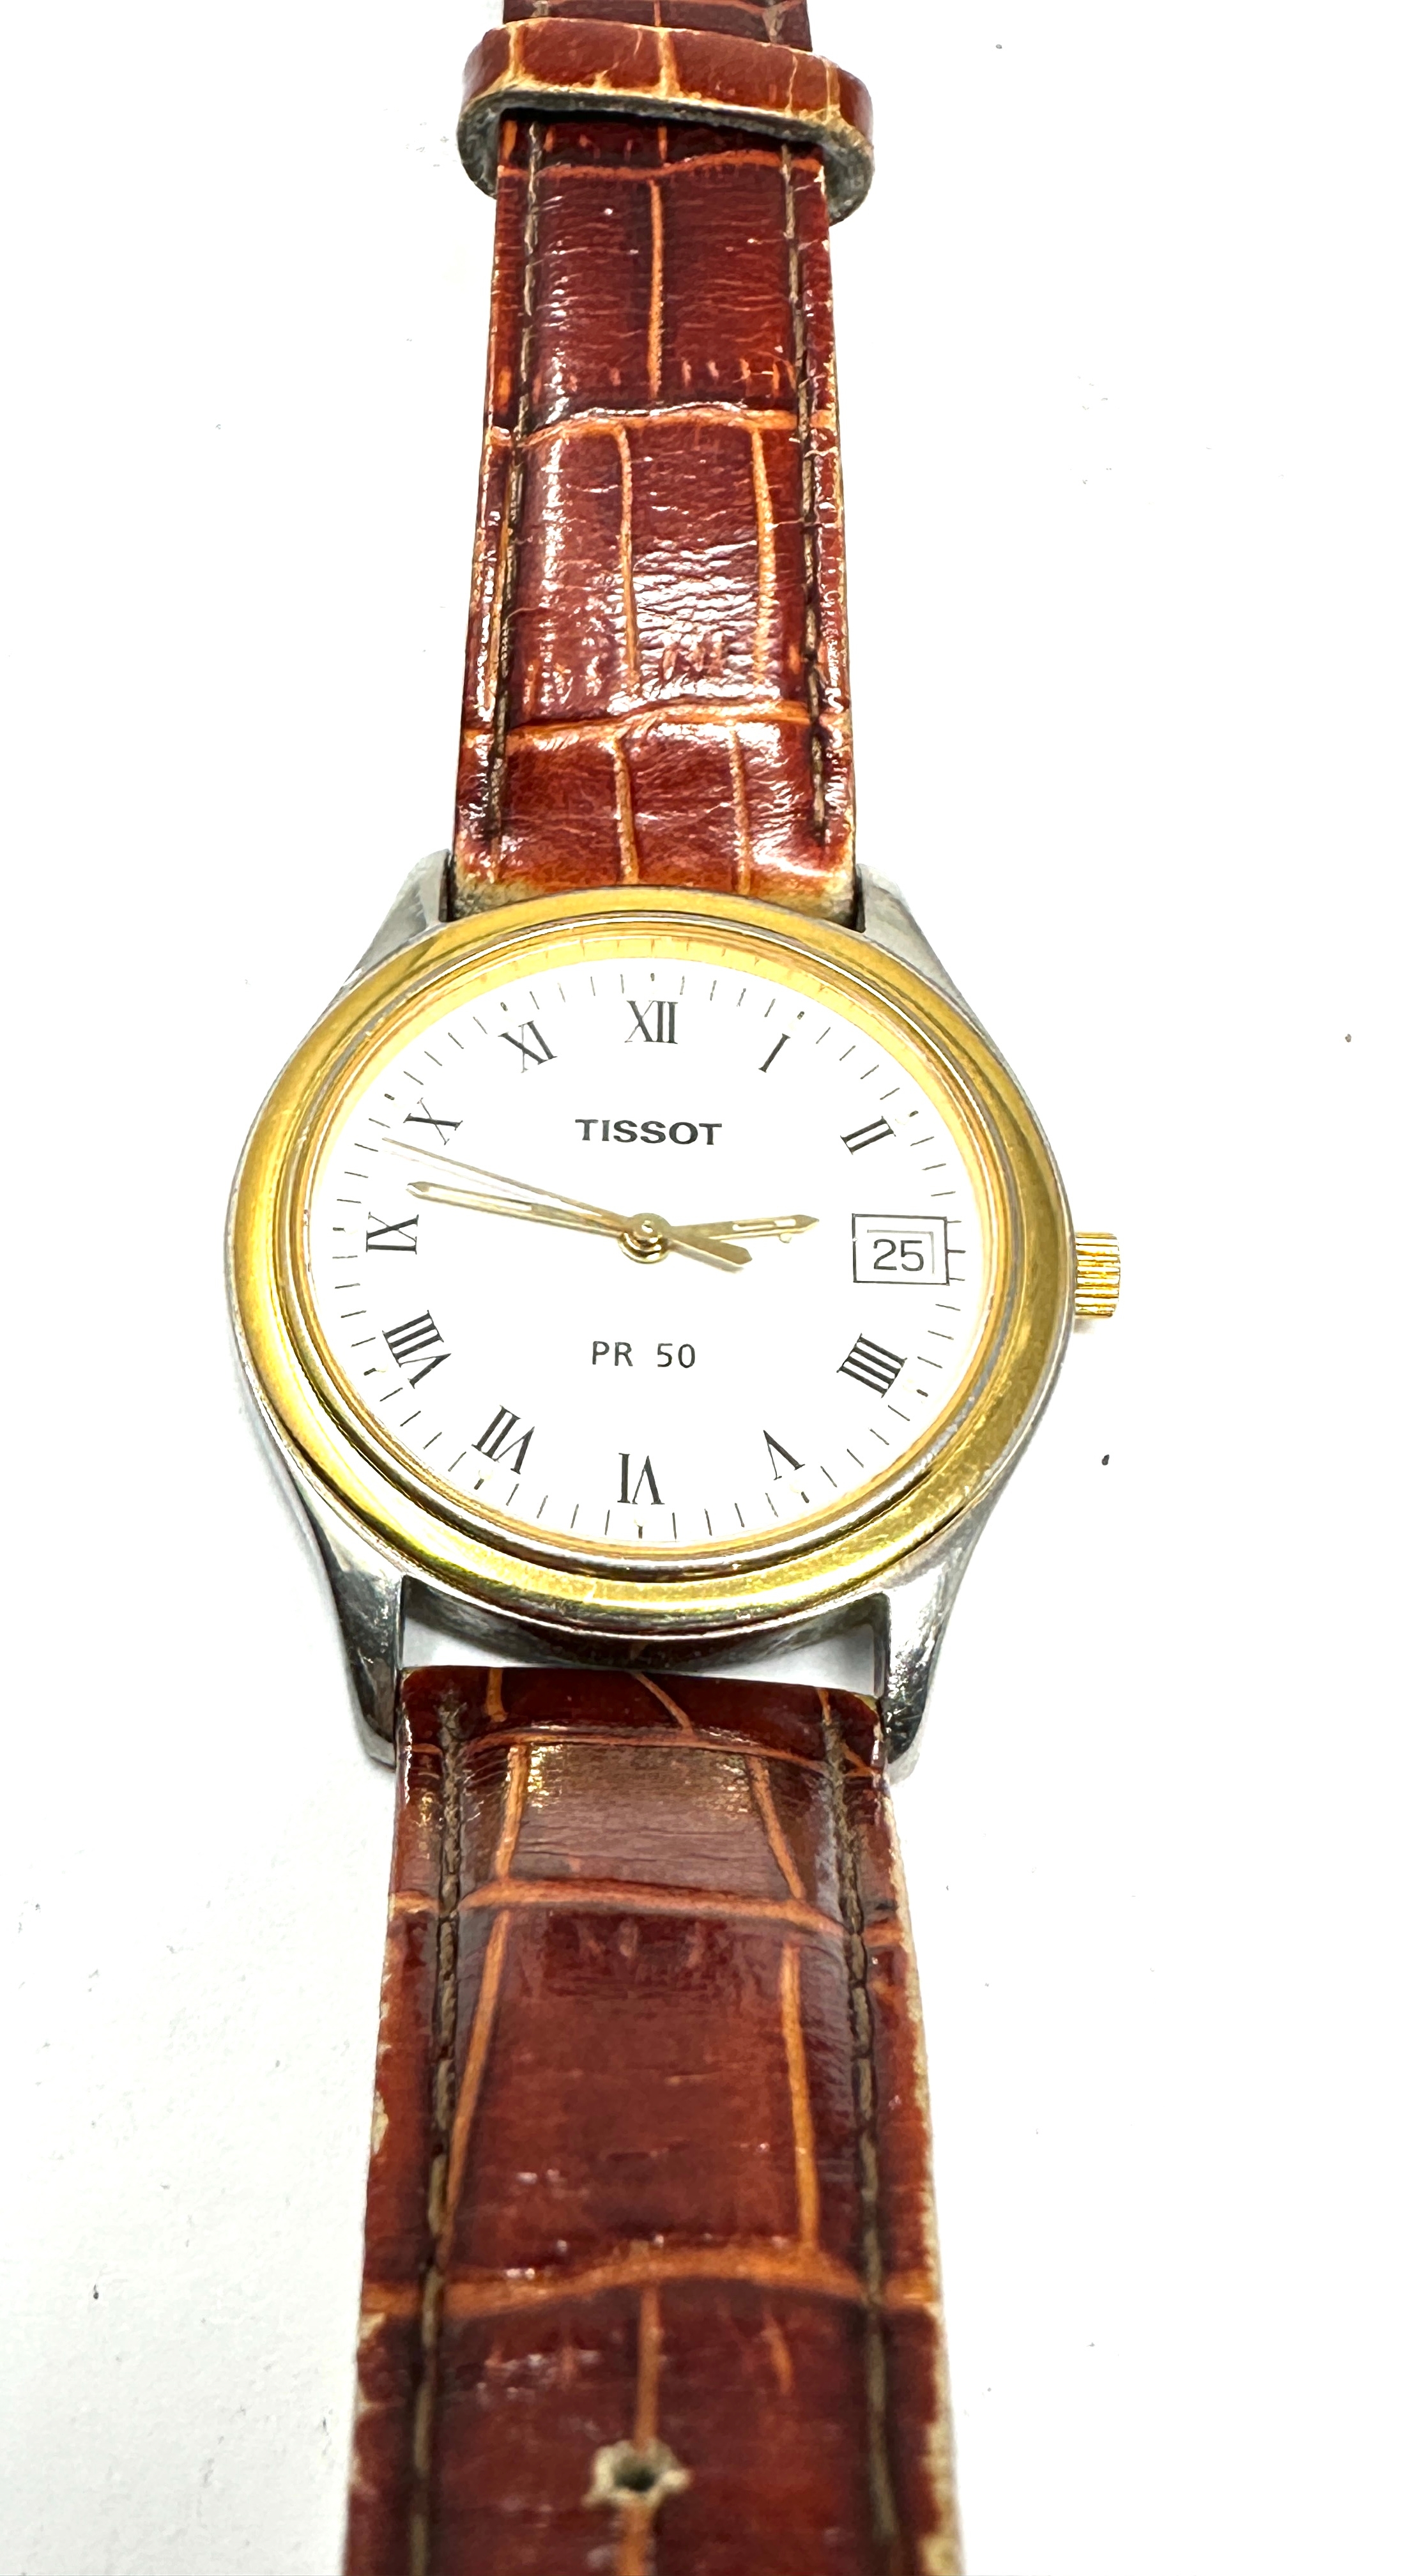 Gents quartz tissot pr 50 wristwatch the watch is ticking